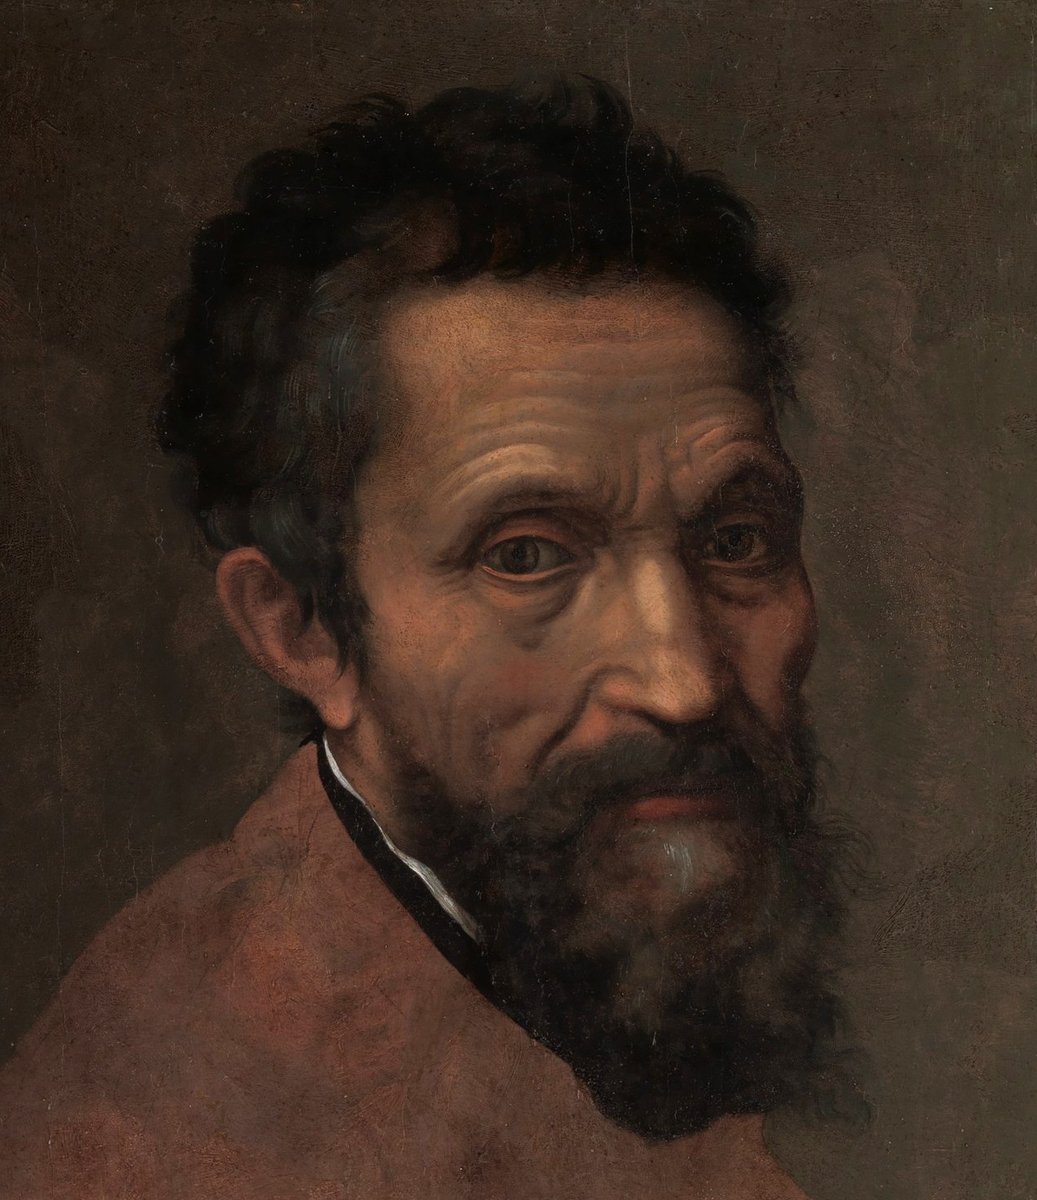 6. Michelangelo